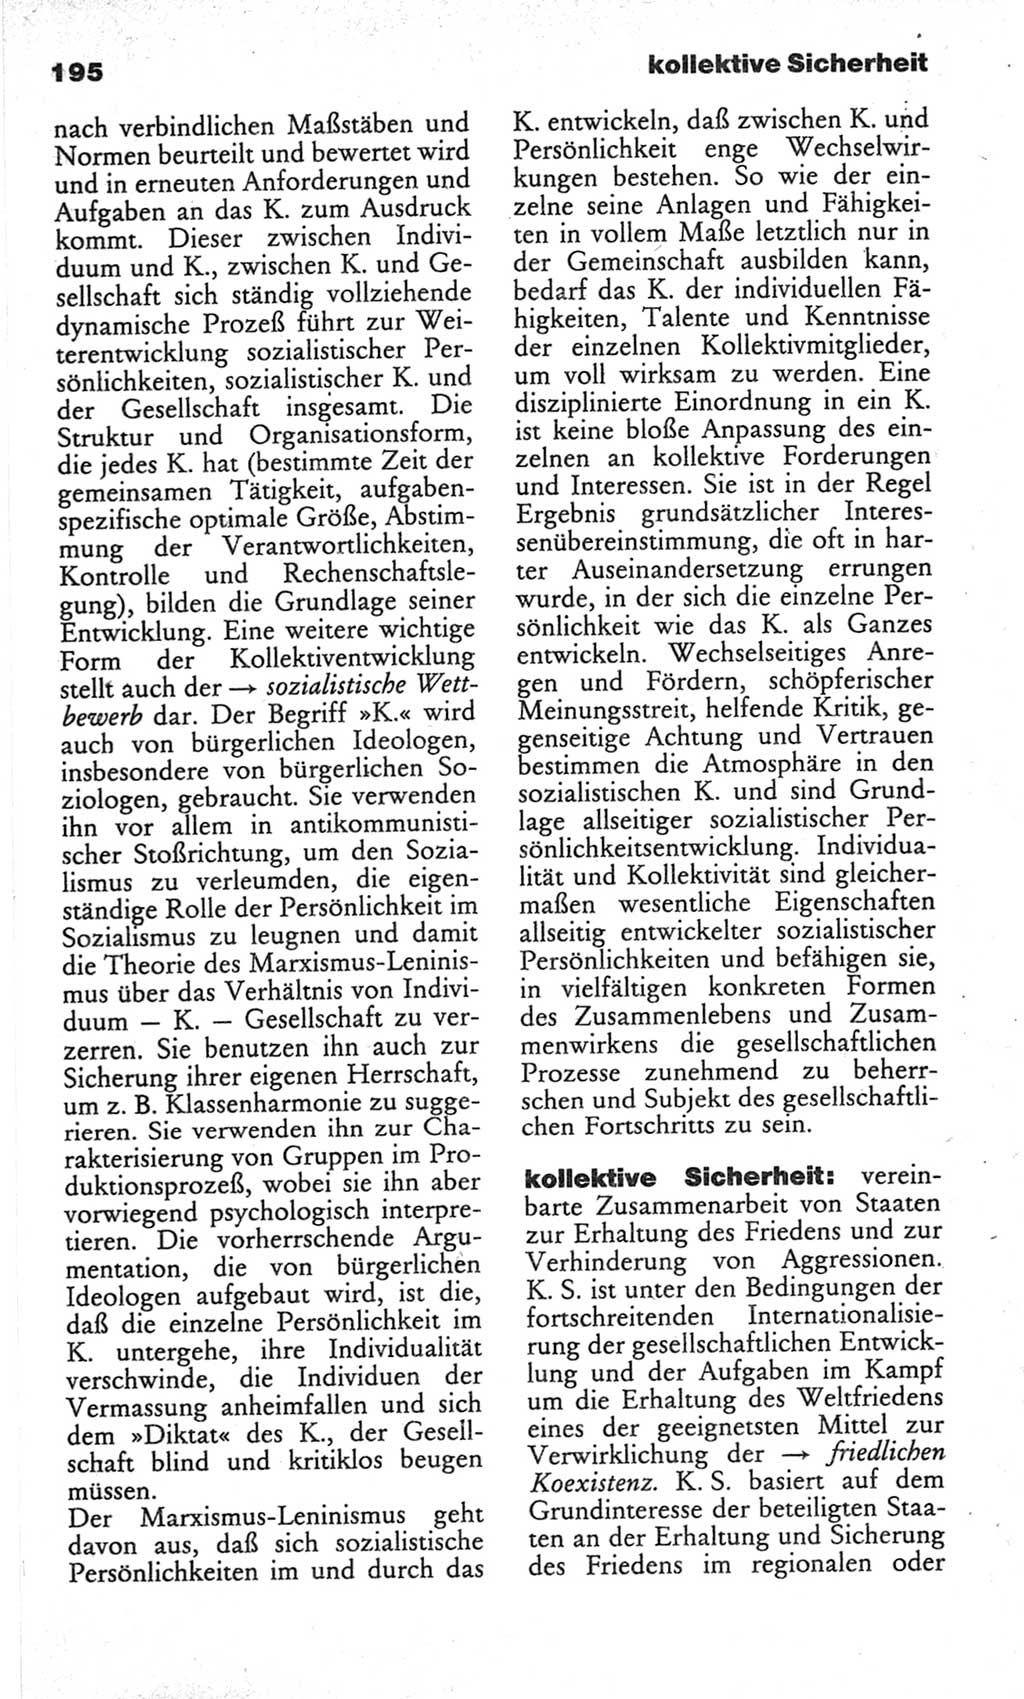 Wörterbuch des wissenschaftlichen Kommunismus [Deutsche Demokratische Republik (DDR)] 1982, Seite 195 (Wb. wiss. Komm. DDR 1982, S. 195)